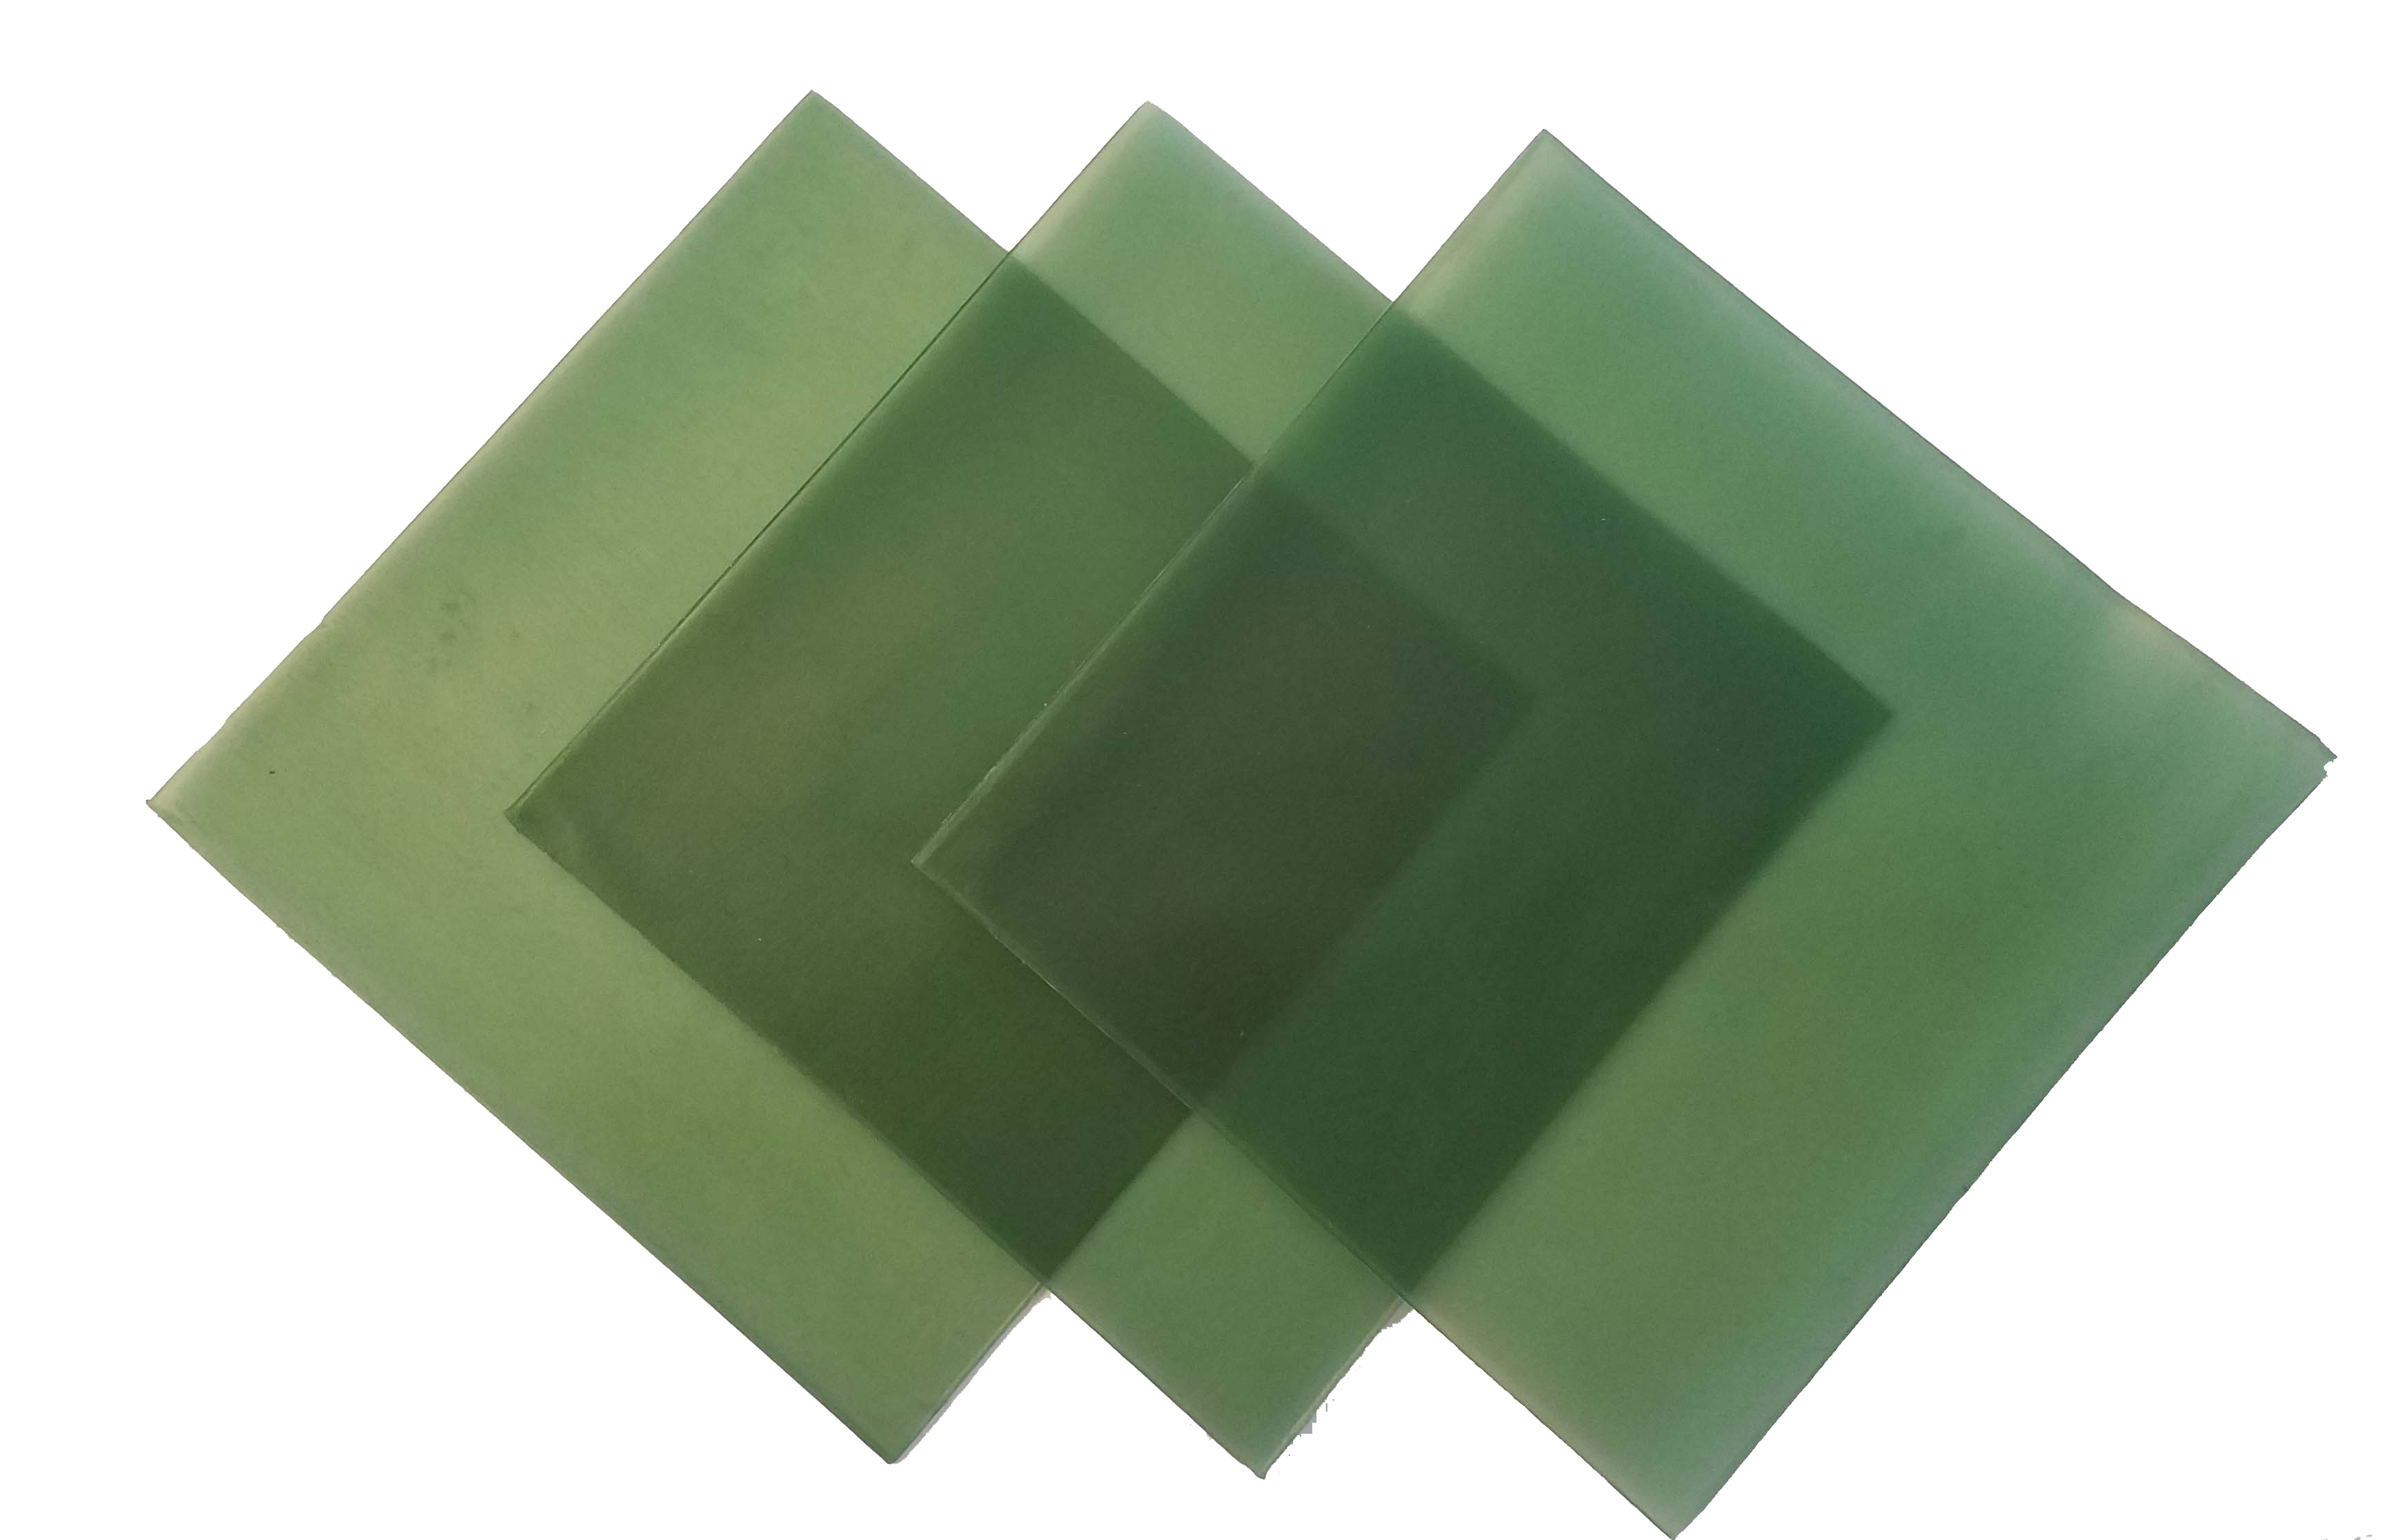 4"x4" sheet wax 26 gauge green